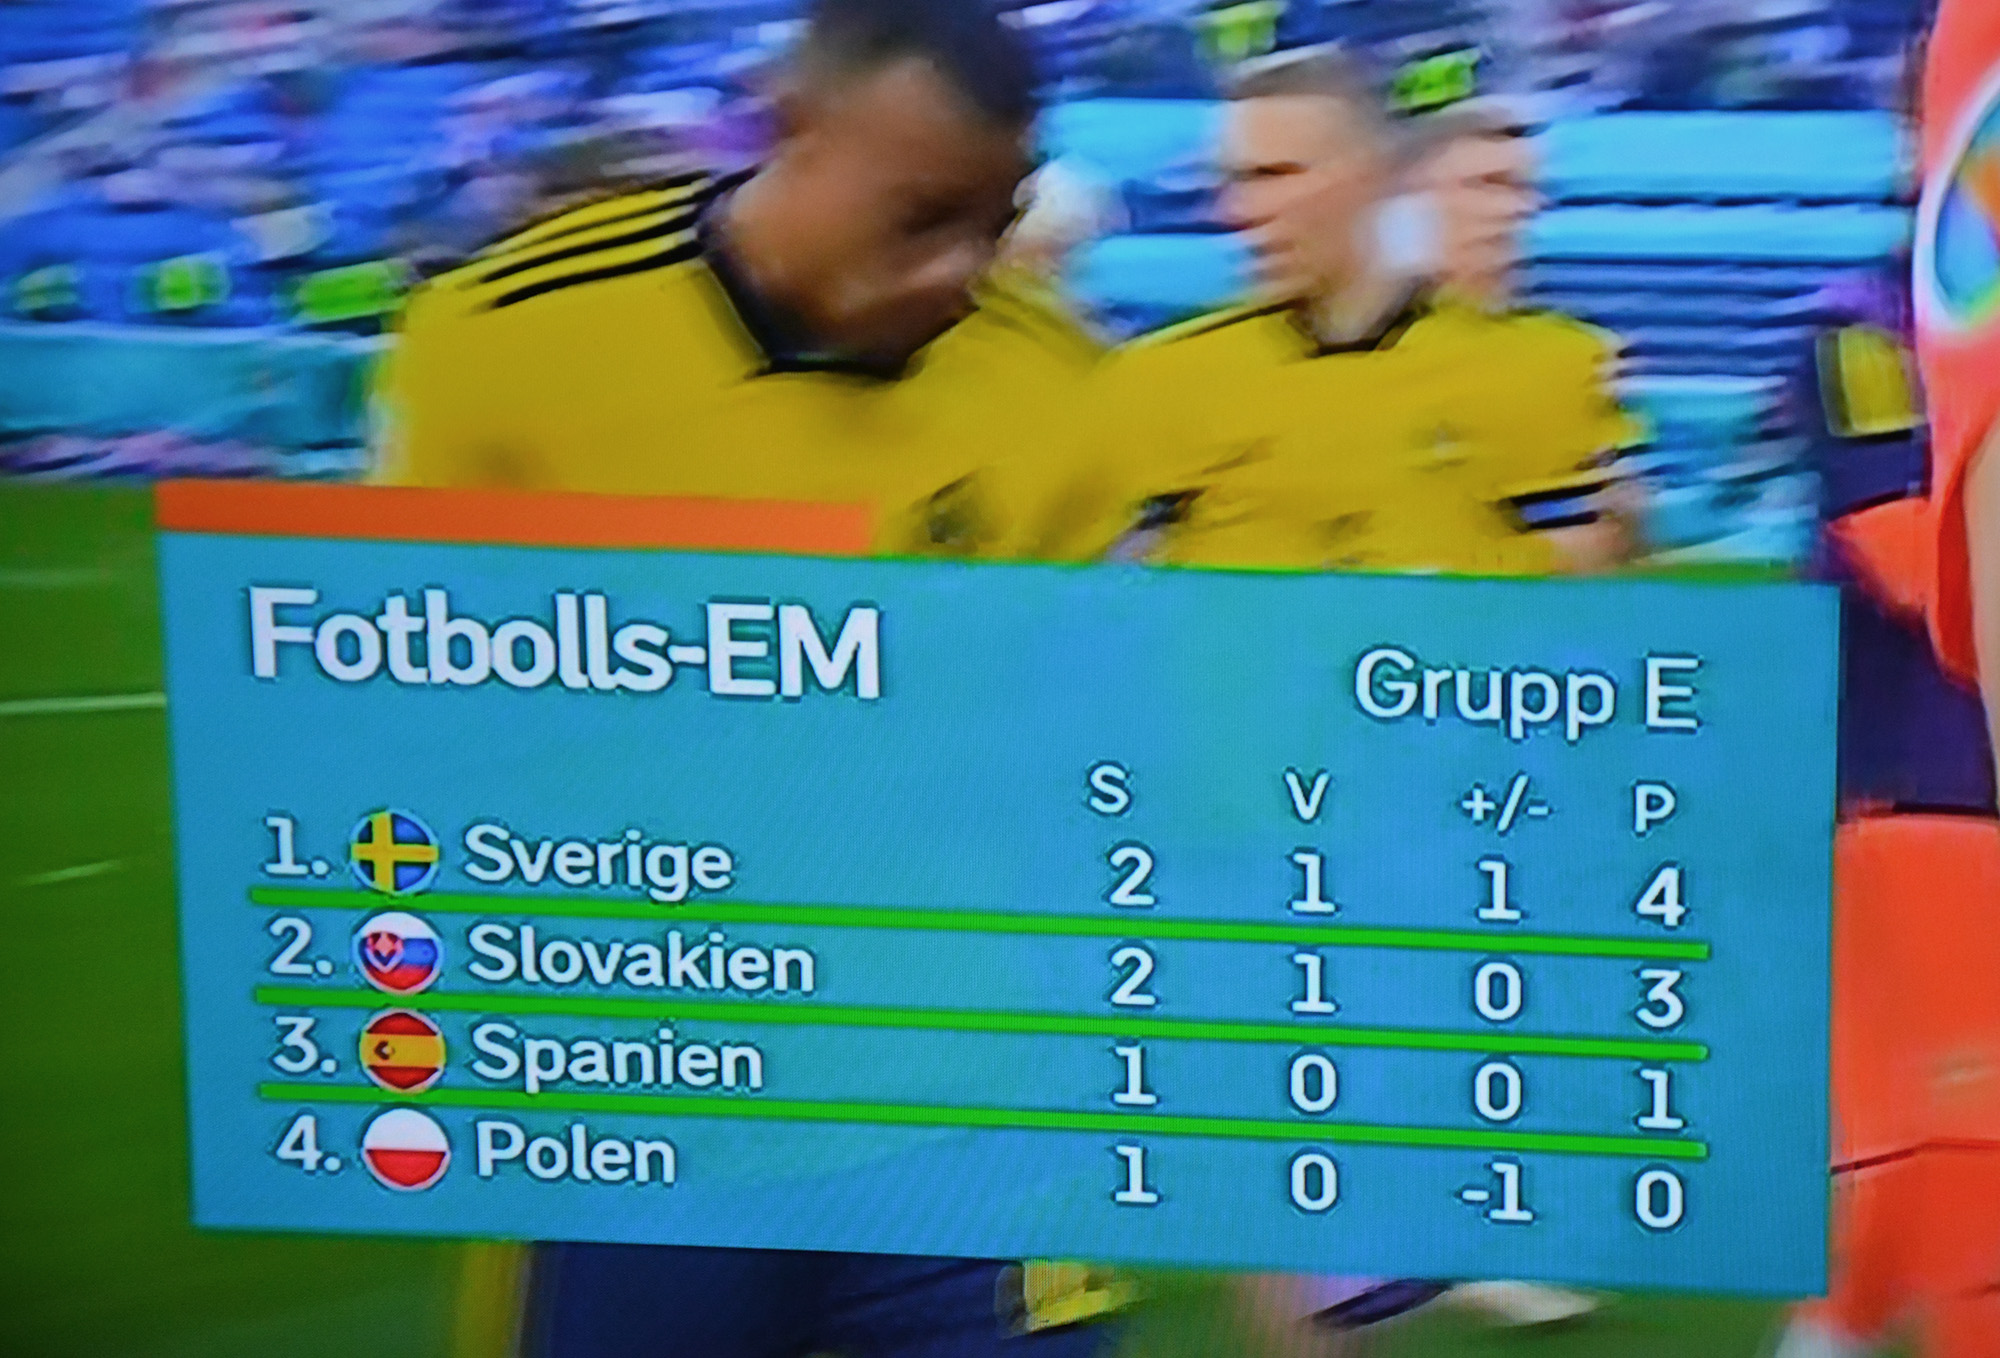 Röste.nu – Fotbolls-EM 2020 – Sverige toppar tabellen i grupp E